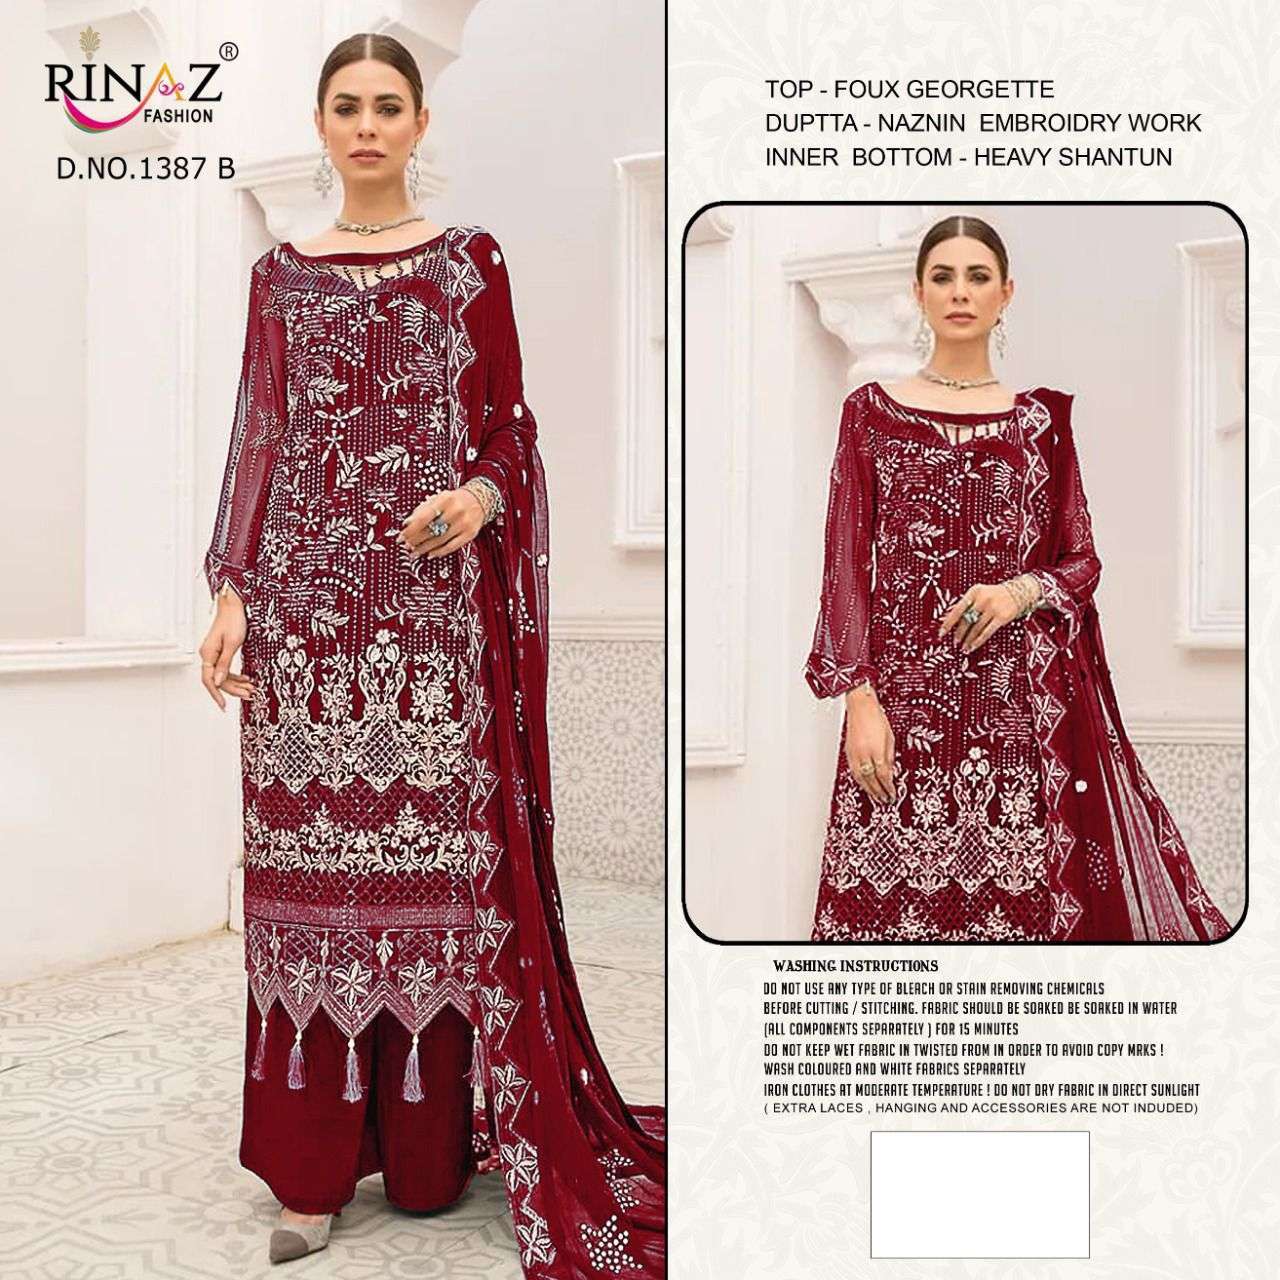 rinaz fashion 1387 colour faux georgette suit 